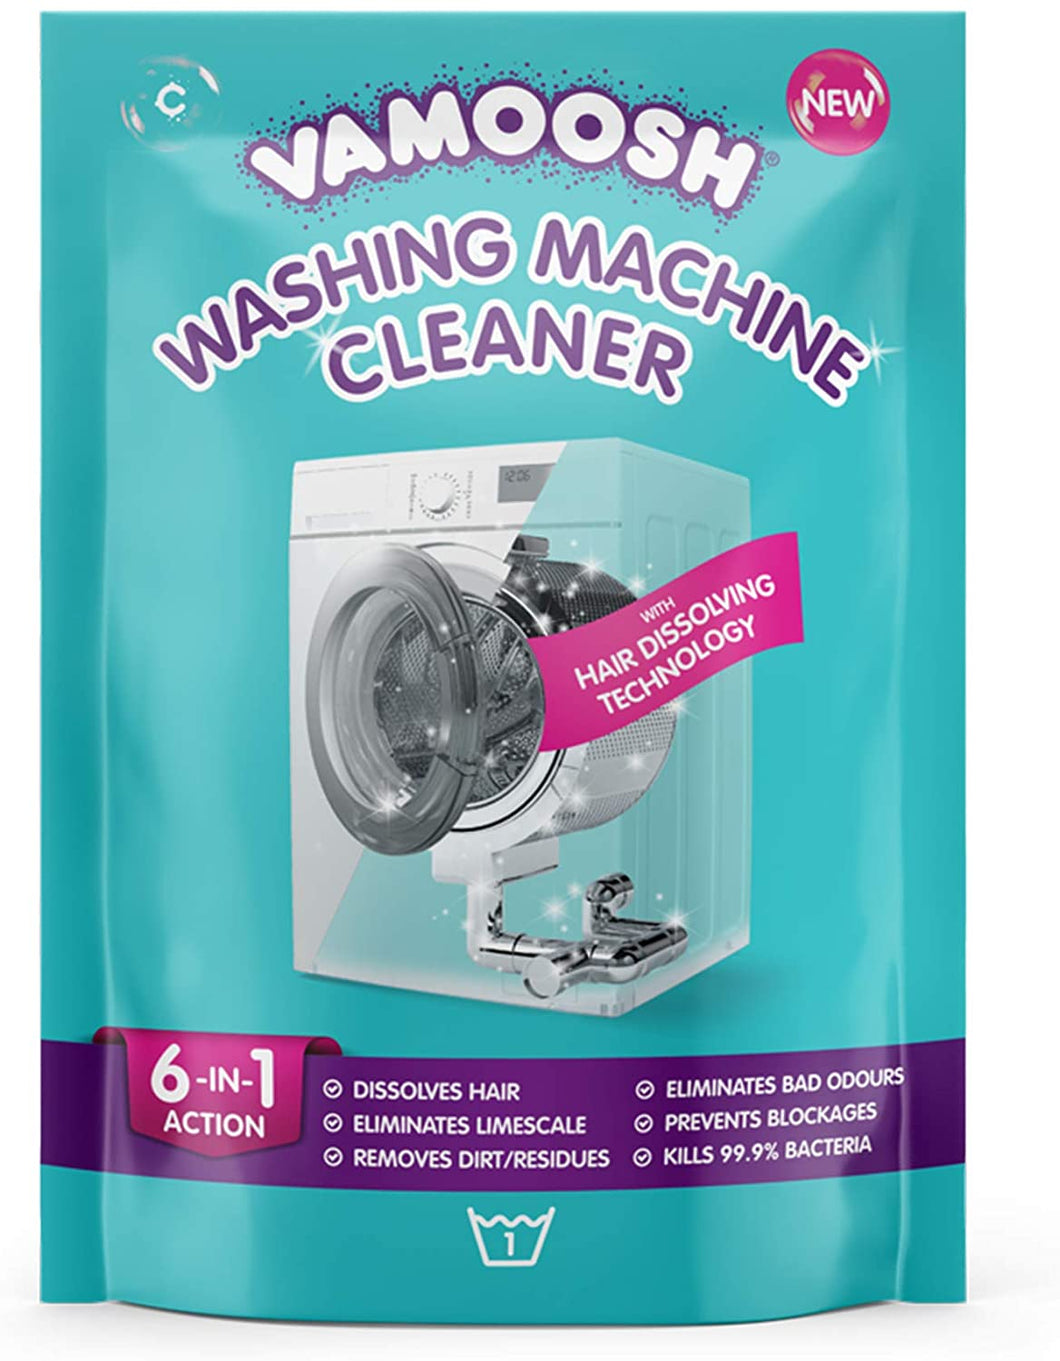 Vamoosh 175g Washing Machine Cleaner Pouch